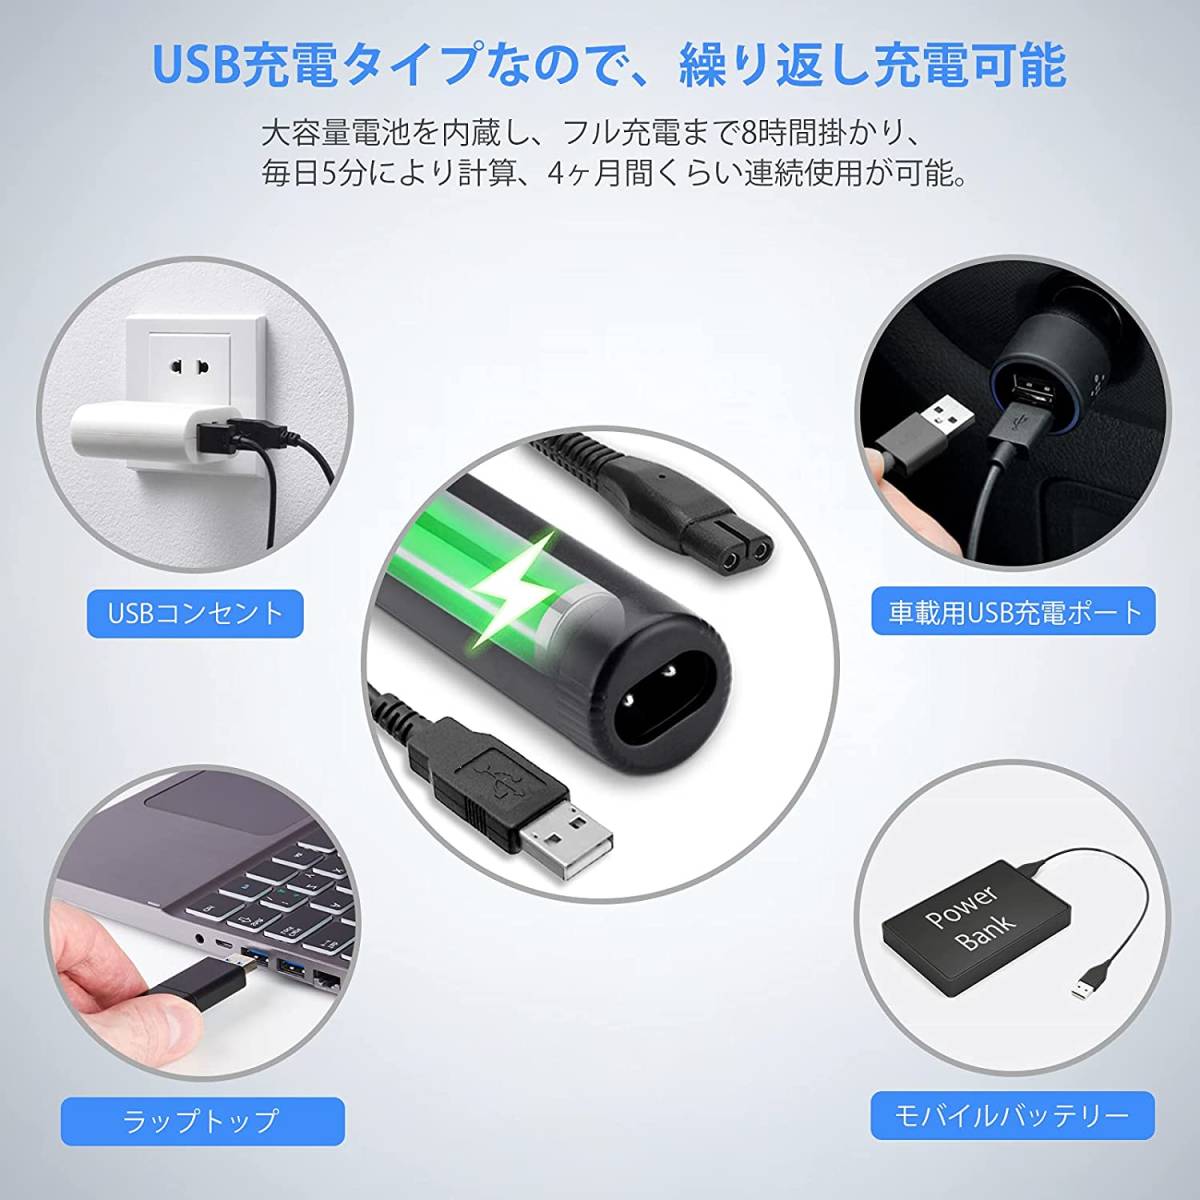 鼻毛カッター メンズ USB充電式 エチケットカッター 1台4役 電動シェーバー 耳毛カッター まゆげシェーバー 顔そり 水洗い可